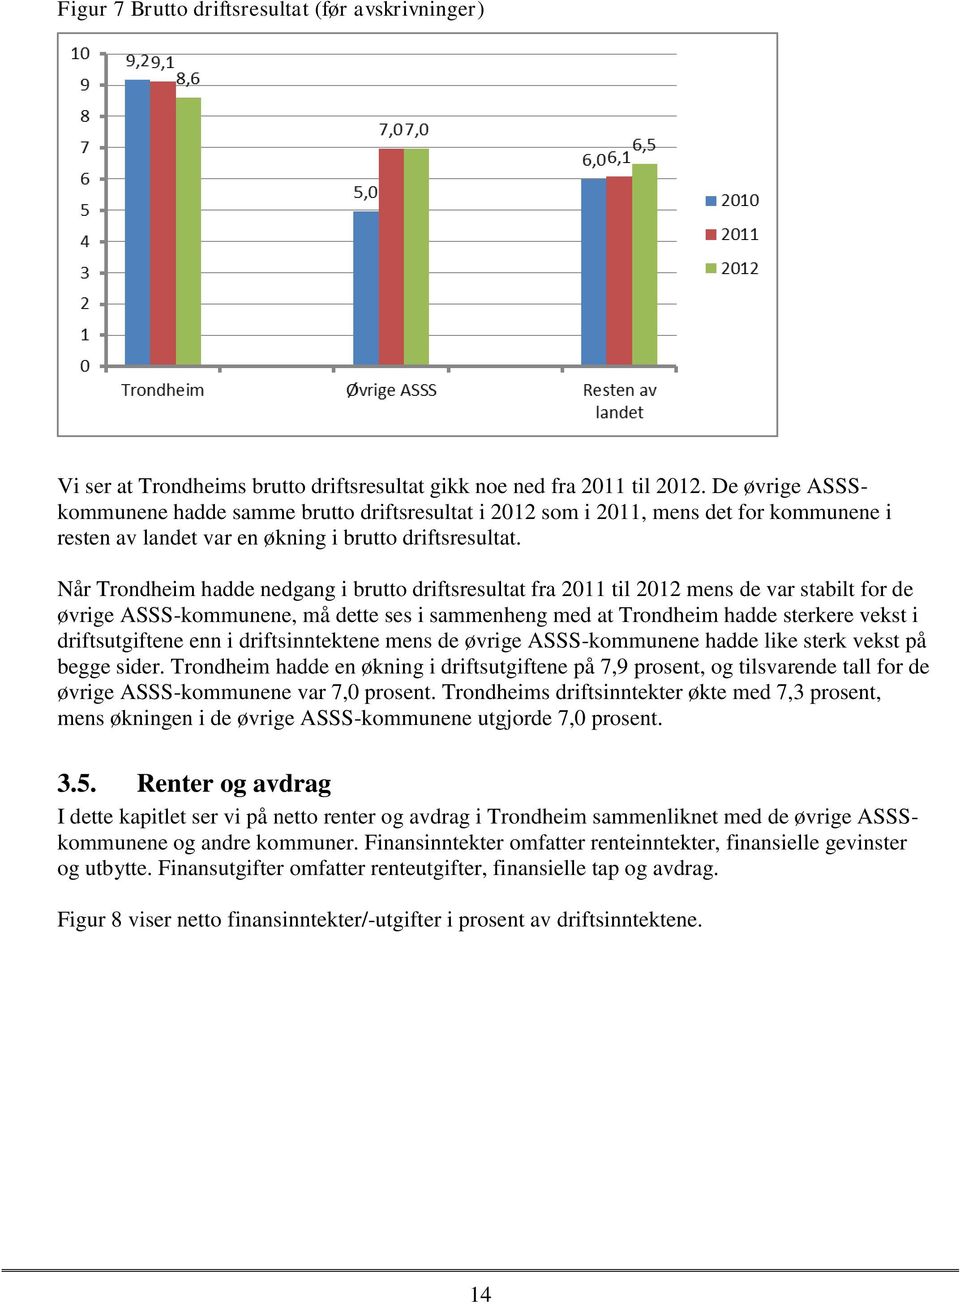 Når Trondheim hadde nedgang i brutto driftsresultat fra 2011 til 2012 mens de var stabilt for de øvrige ASSS-kommunene, må dette ses i sammenheng med at Trondheim hadde sterkere vekst i